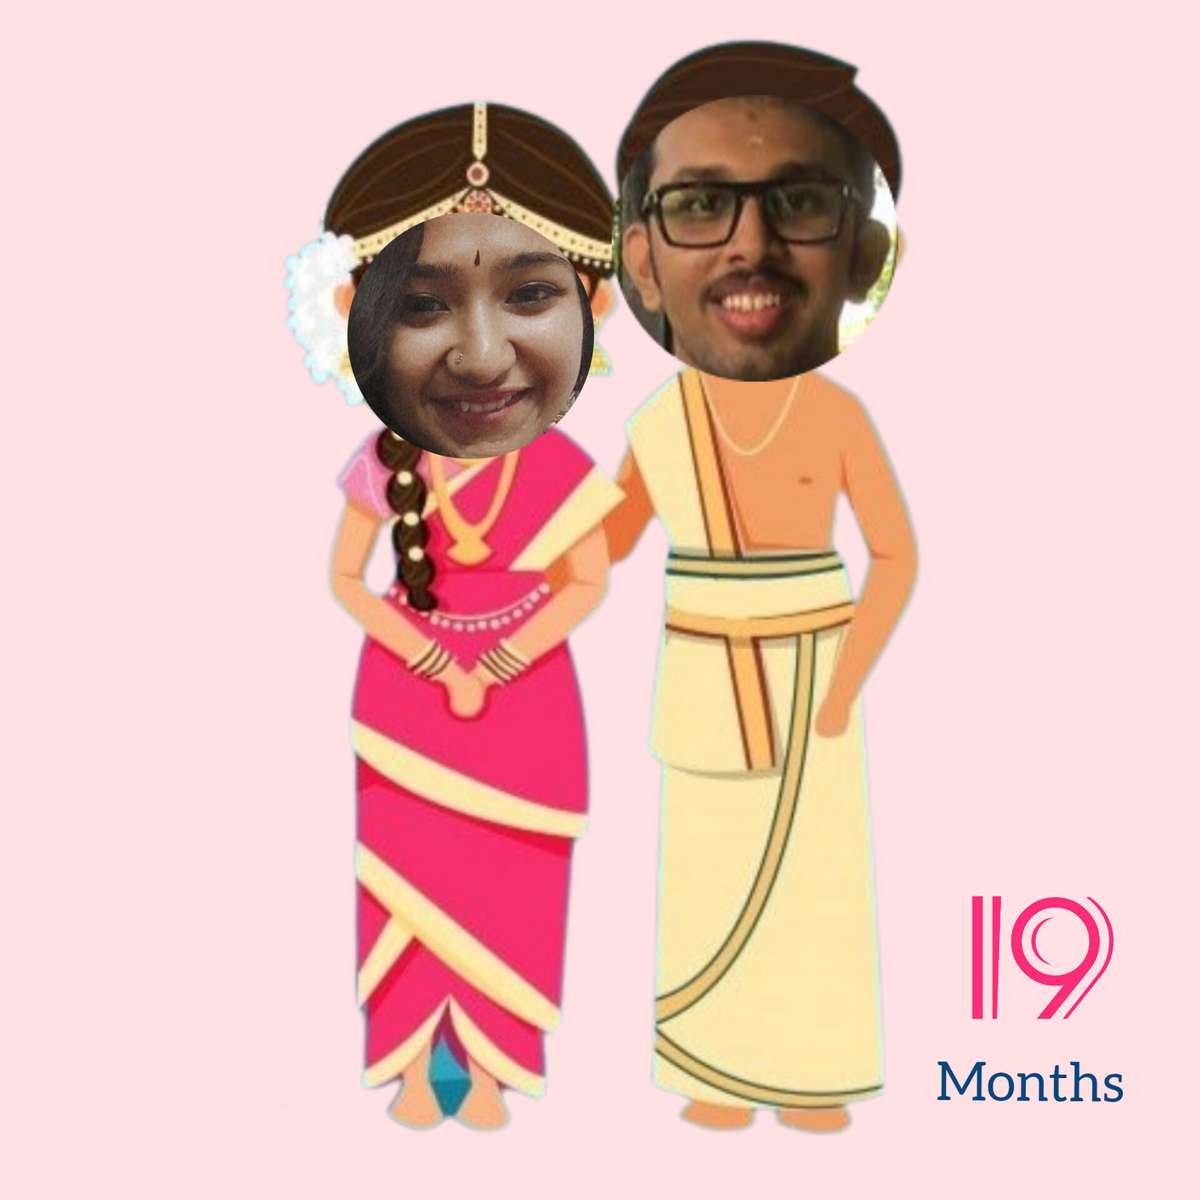 Glada 19 månader Mr. Shashwath! Pussel online